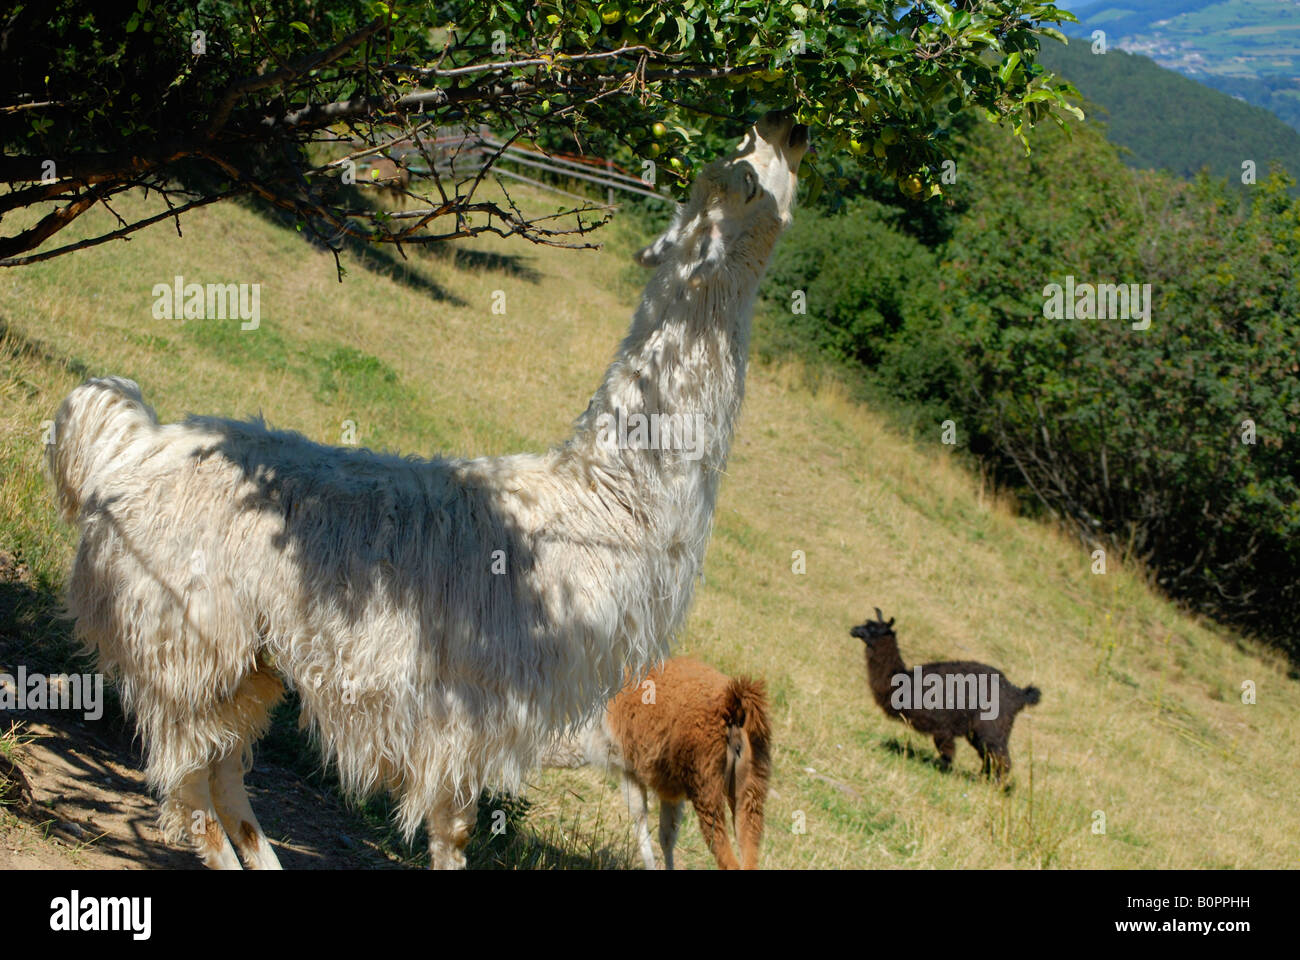 Llamas sull'altopiano del Renon vicino a Bolzano in Alto Adige Italia Foto Stock